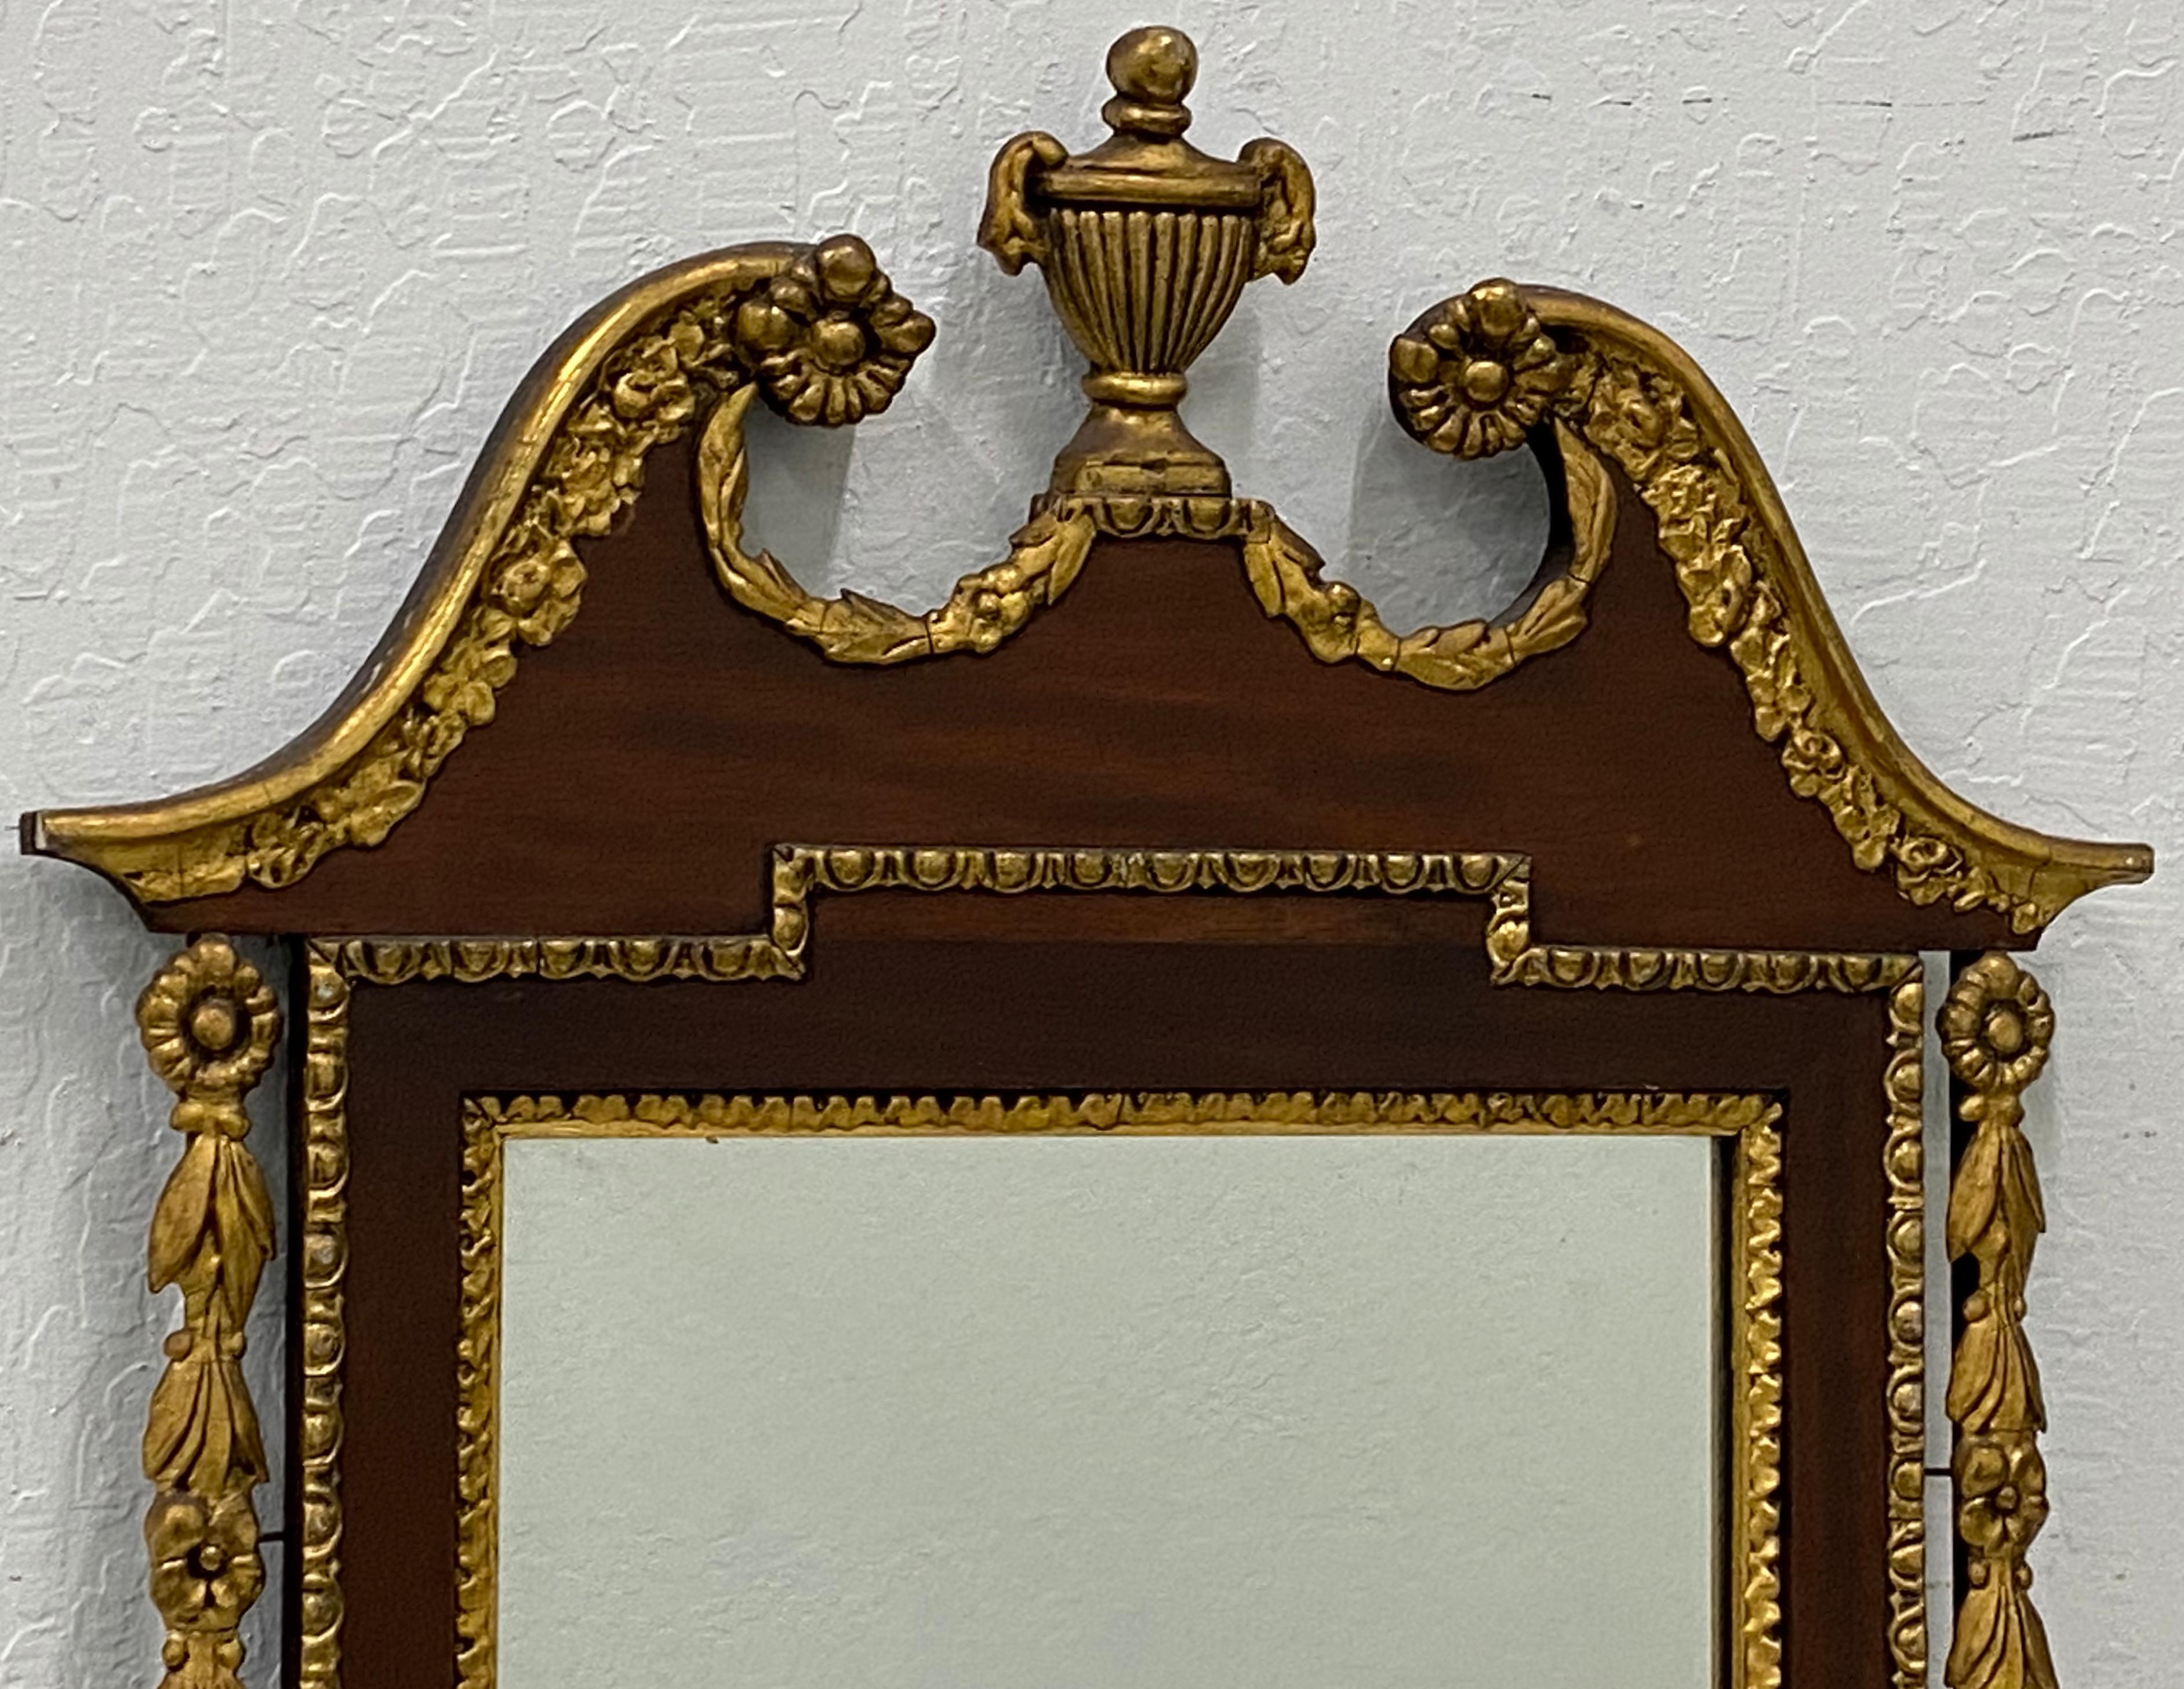 miroir mural du 19e siècle en acajou sculpté et doré à la main

Dimensions du miroir : 14